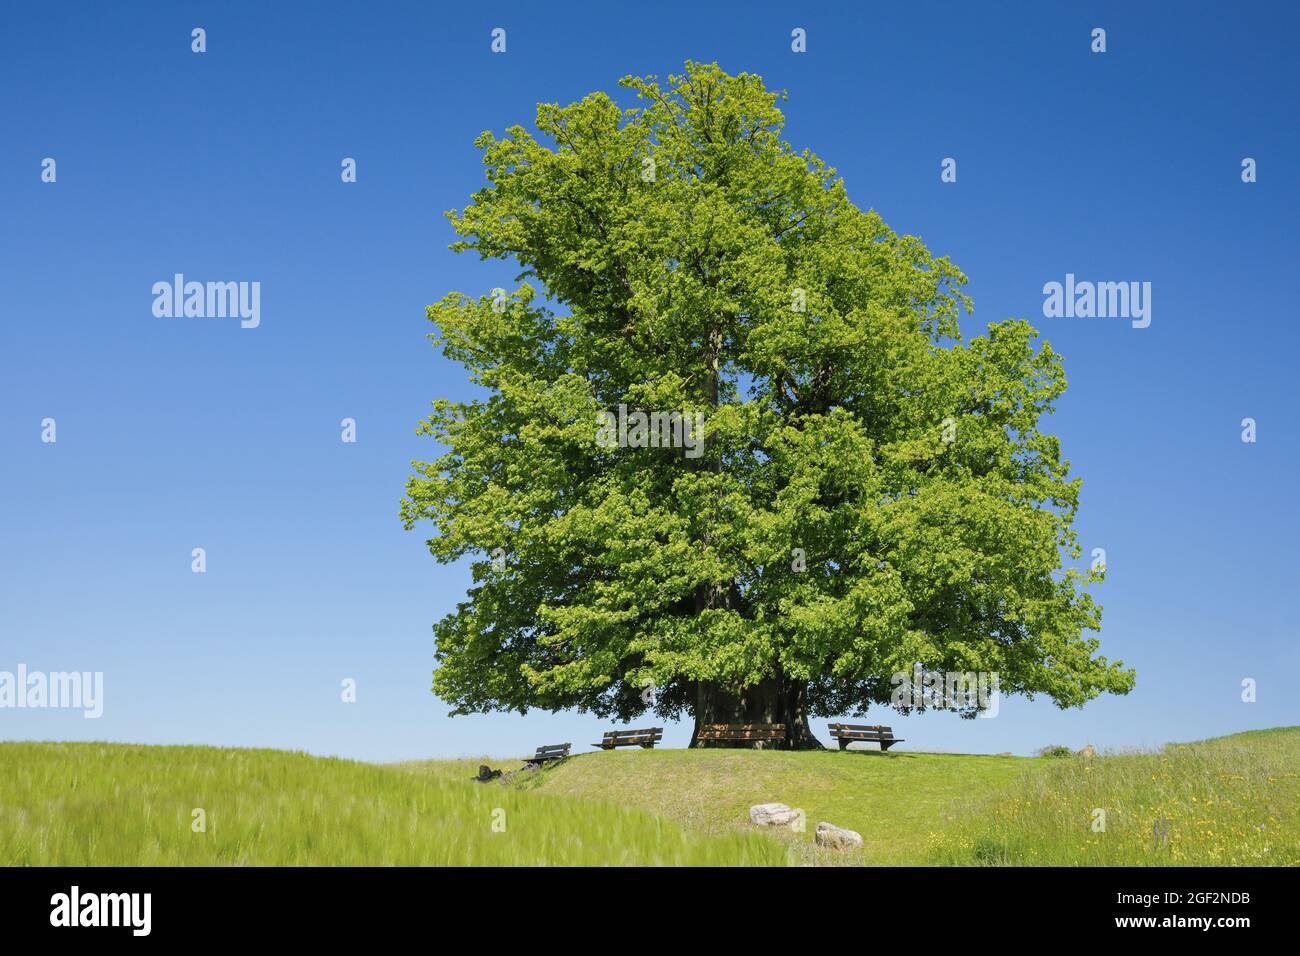 Limo de hoja grande, árbol de lima (Tilia platyphyllos), árbol de linden de Linn, árbol de linden antiguo grande que se encuentra bajo un cielo azul, Suiza, Argovia, Foto de stock